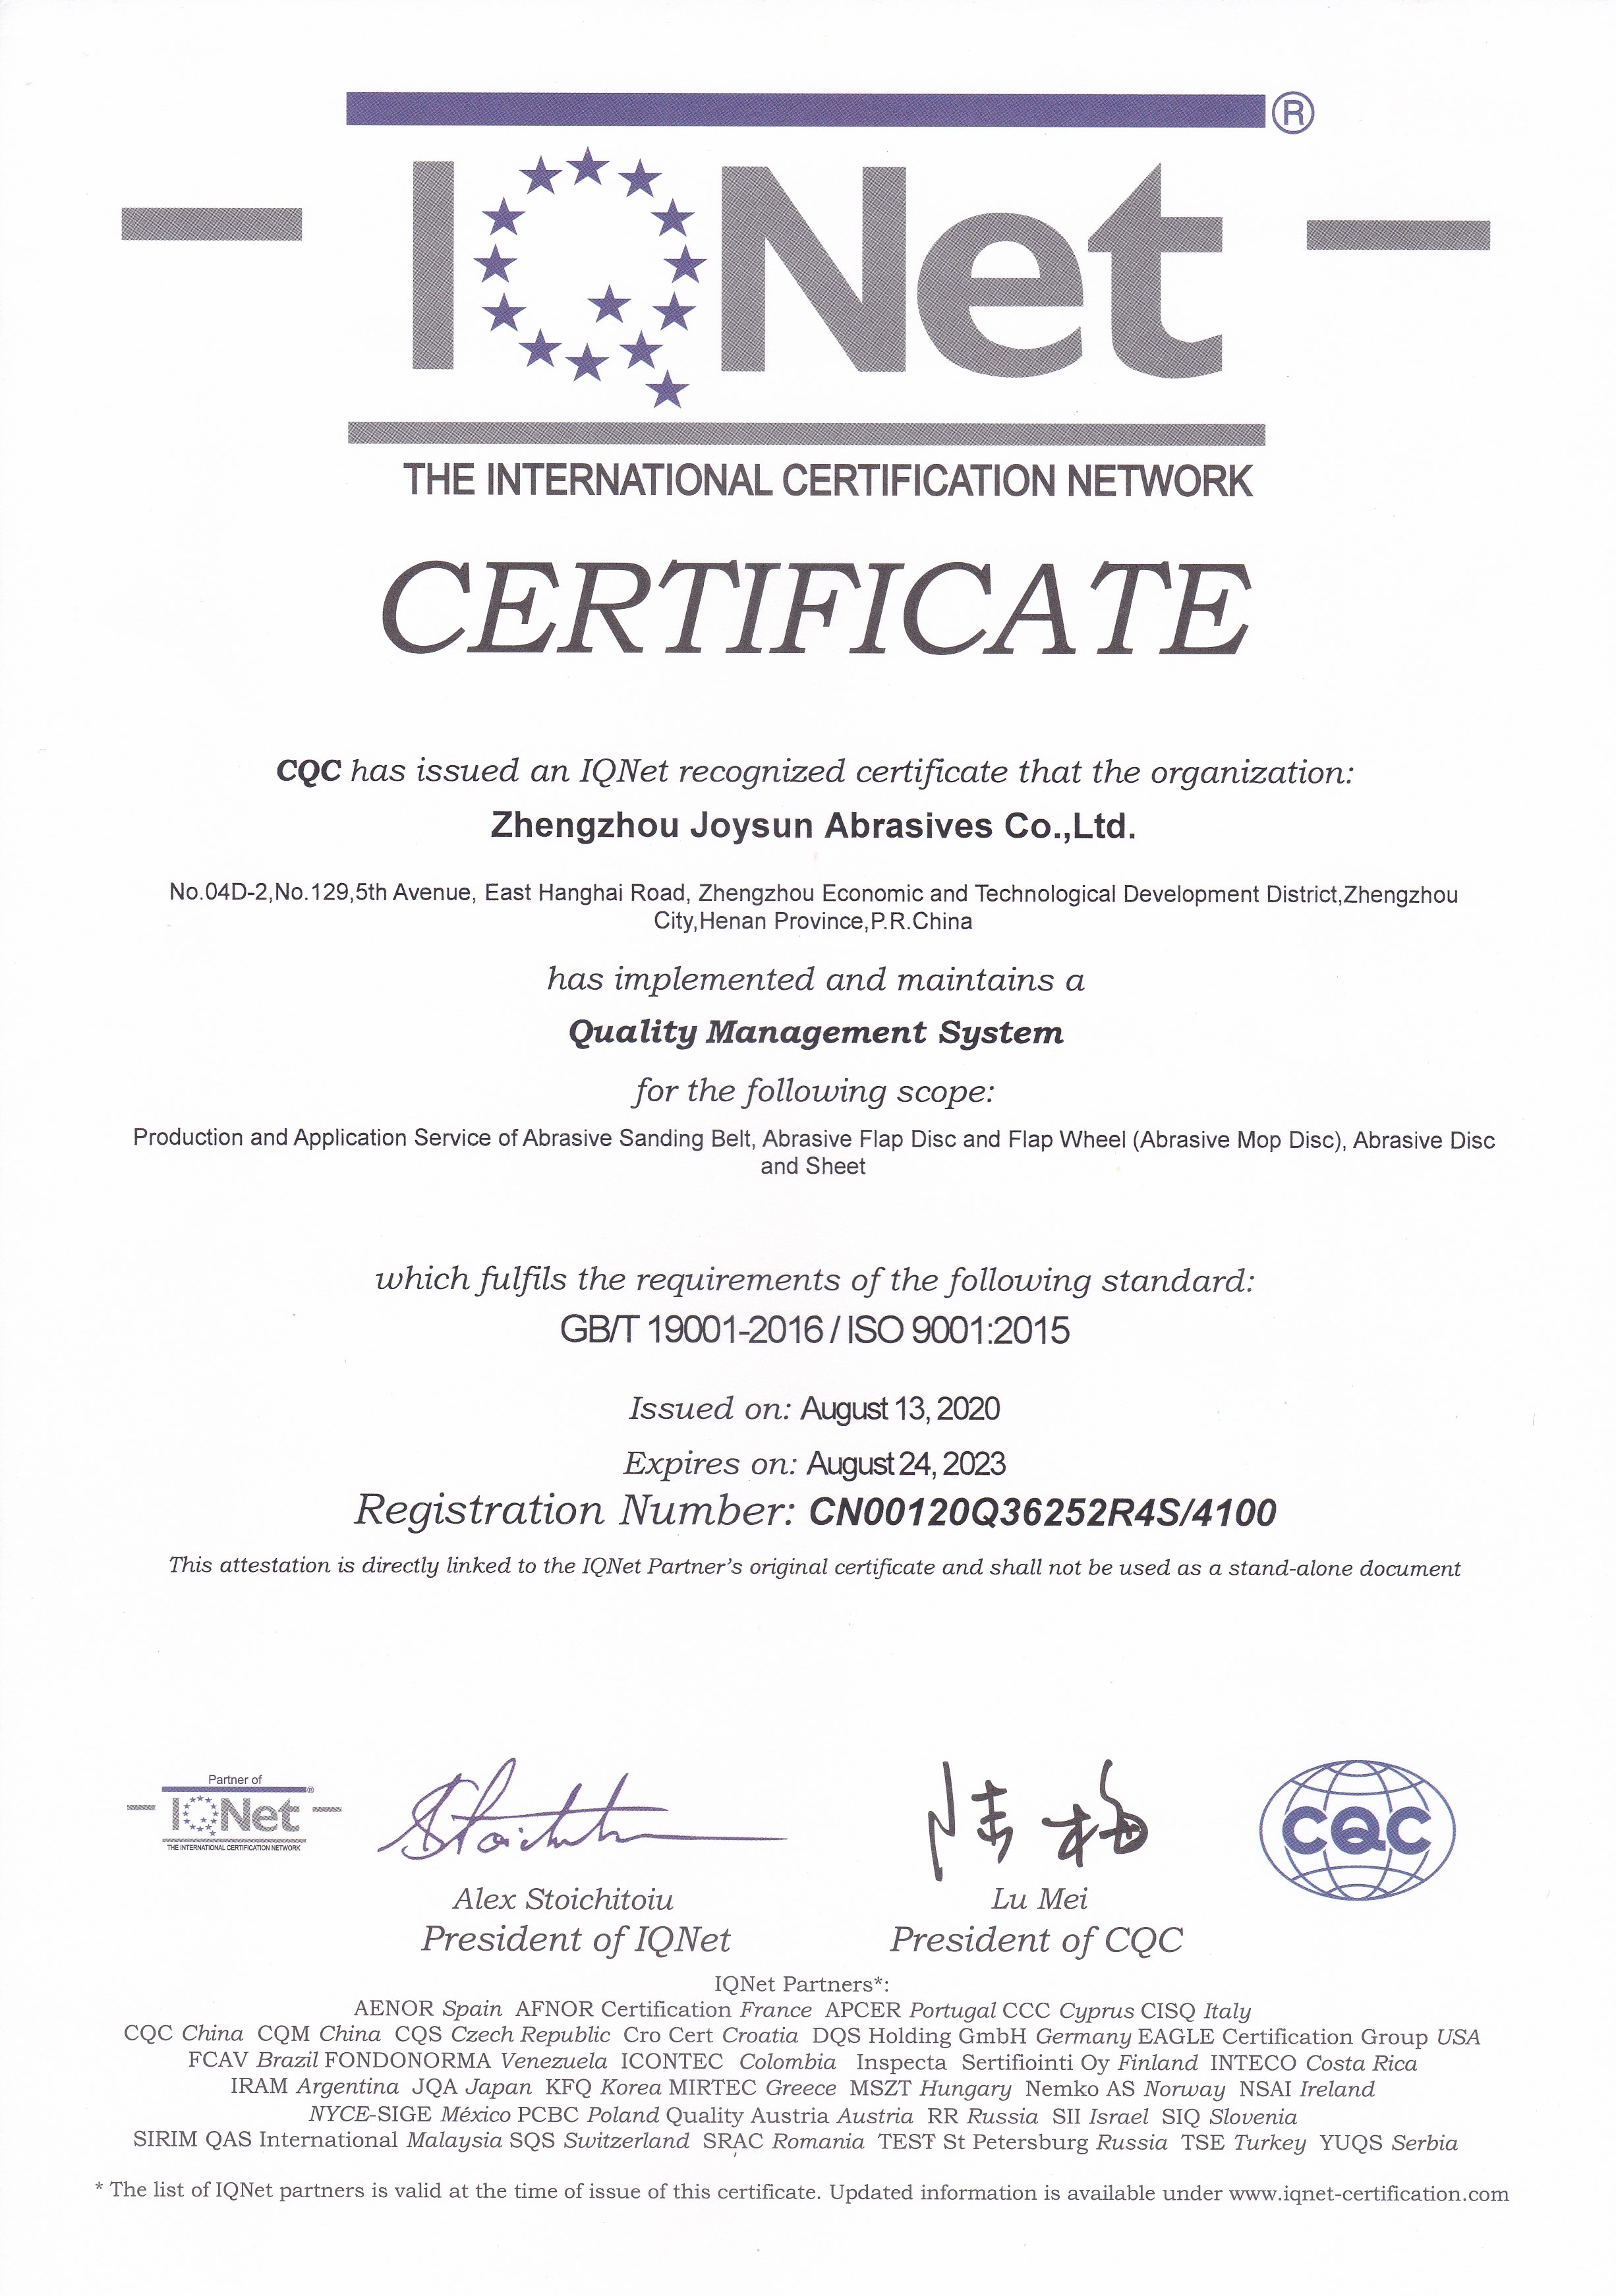 iq-net certification